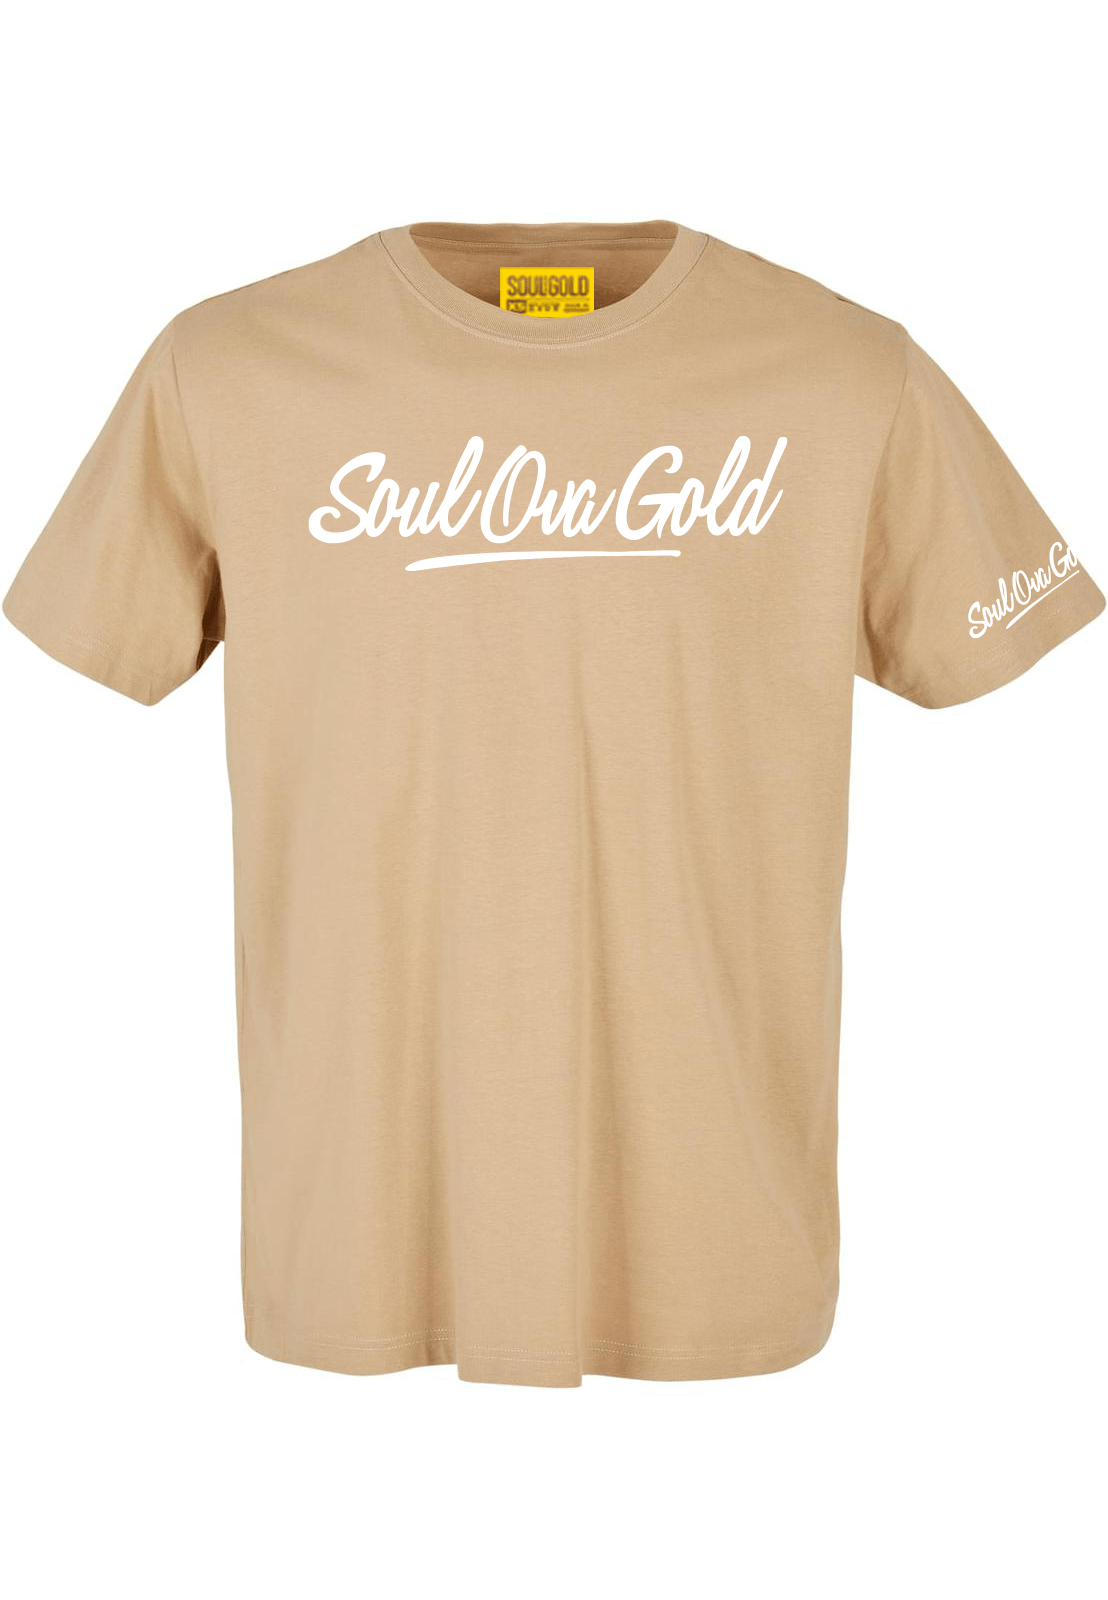 Soul Ova Gold Men's Tees Stick 2 The Script Classic fit T-Shirt (Union Beige)